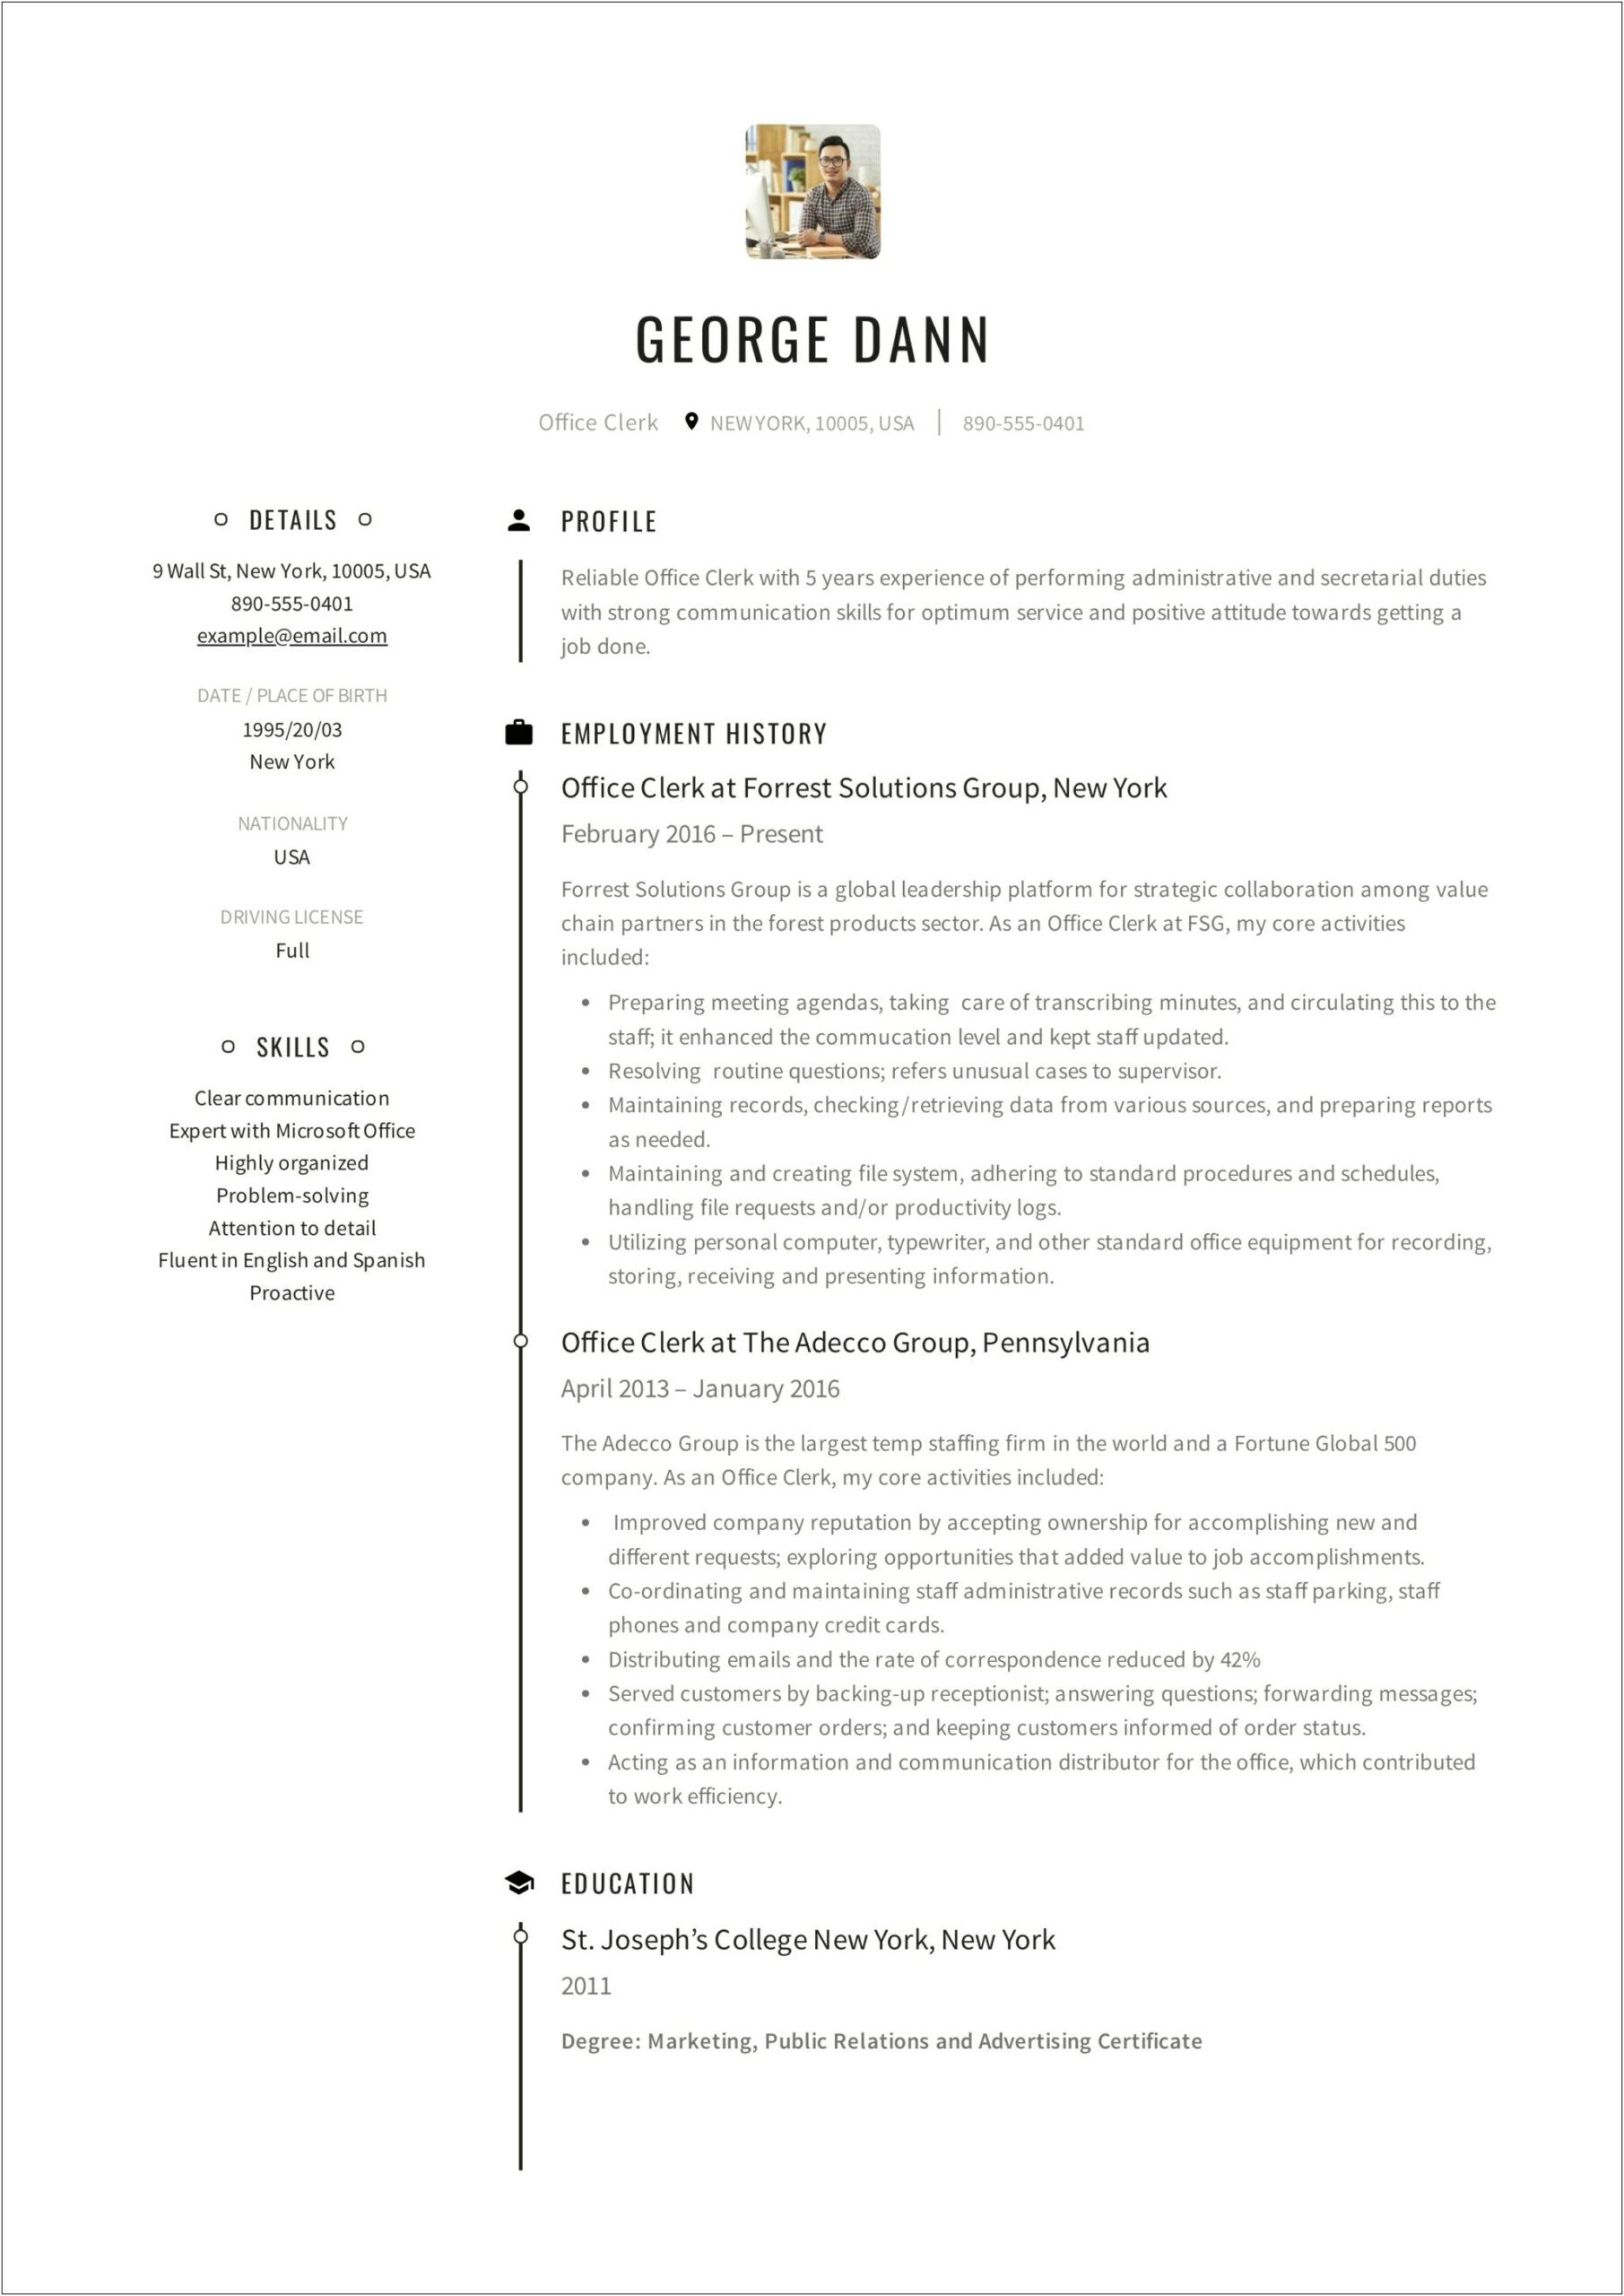 Sample Resume Objectives For Court Clerk